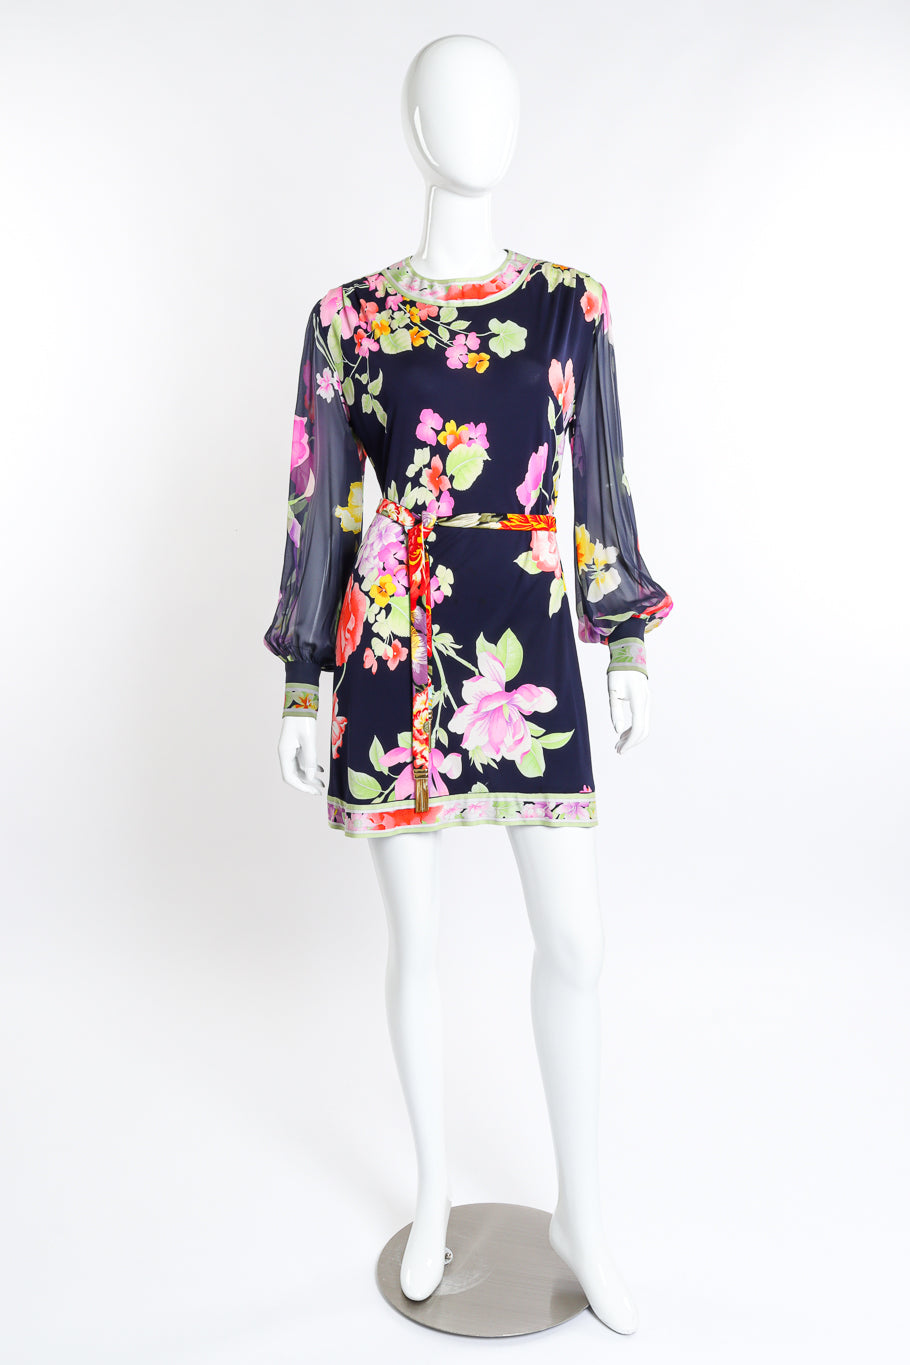 Vintage Leonard Floral Silk Jersey Dress front on mannequin @recess la